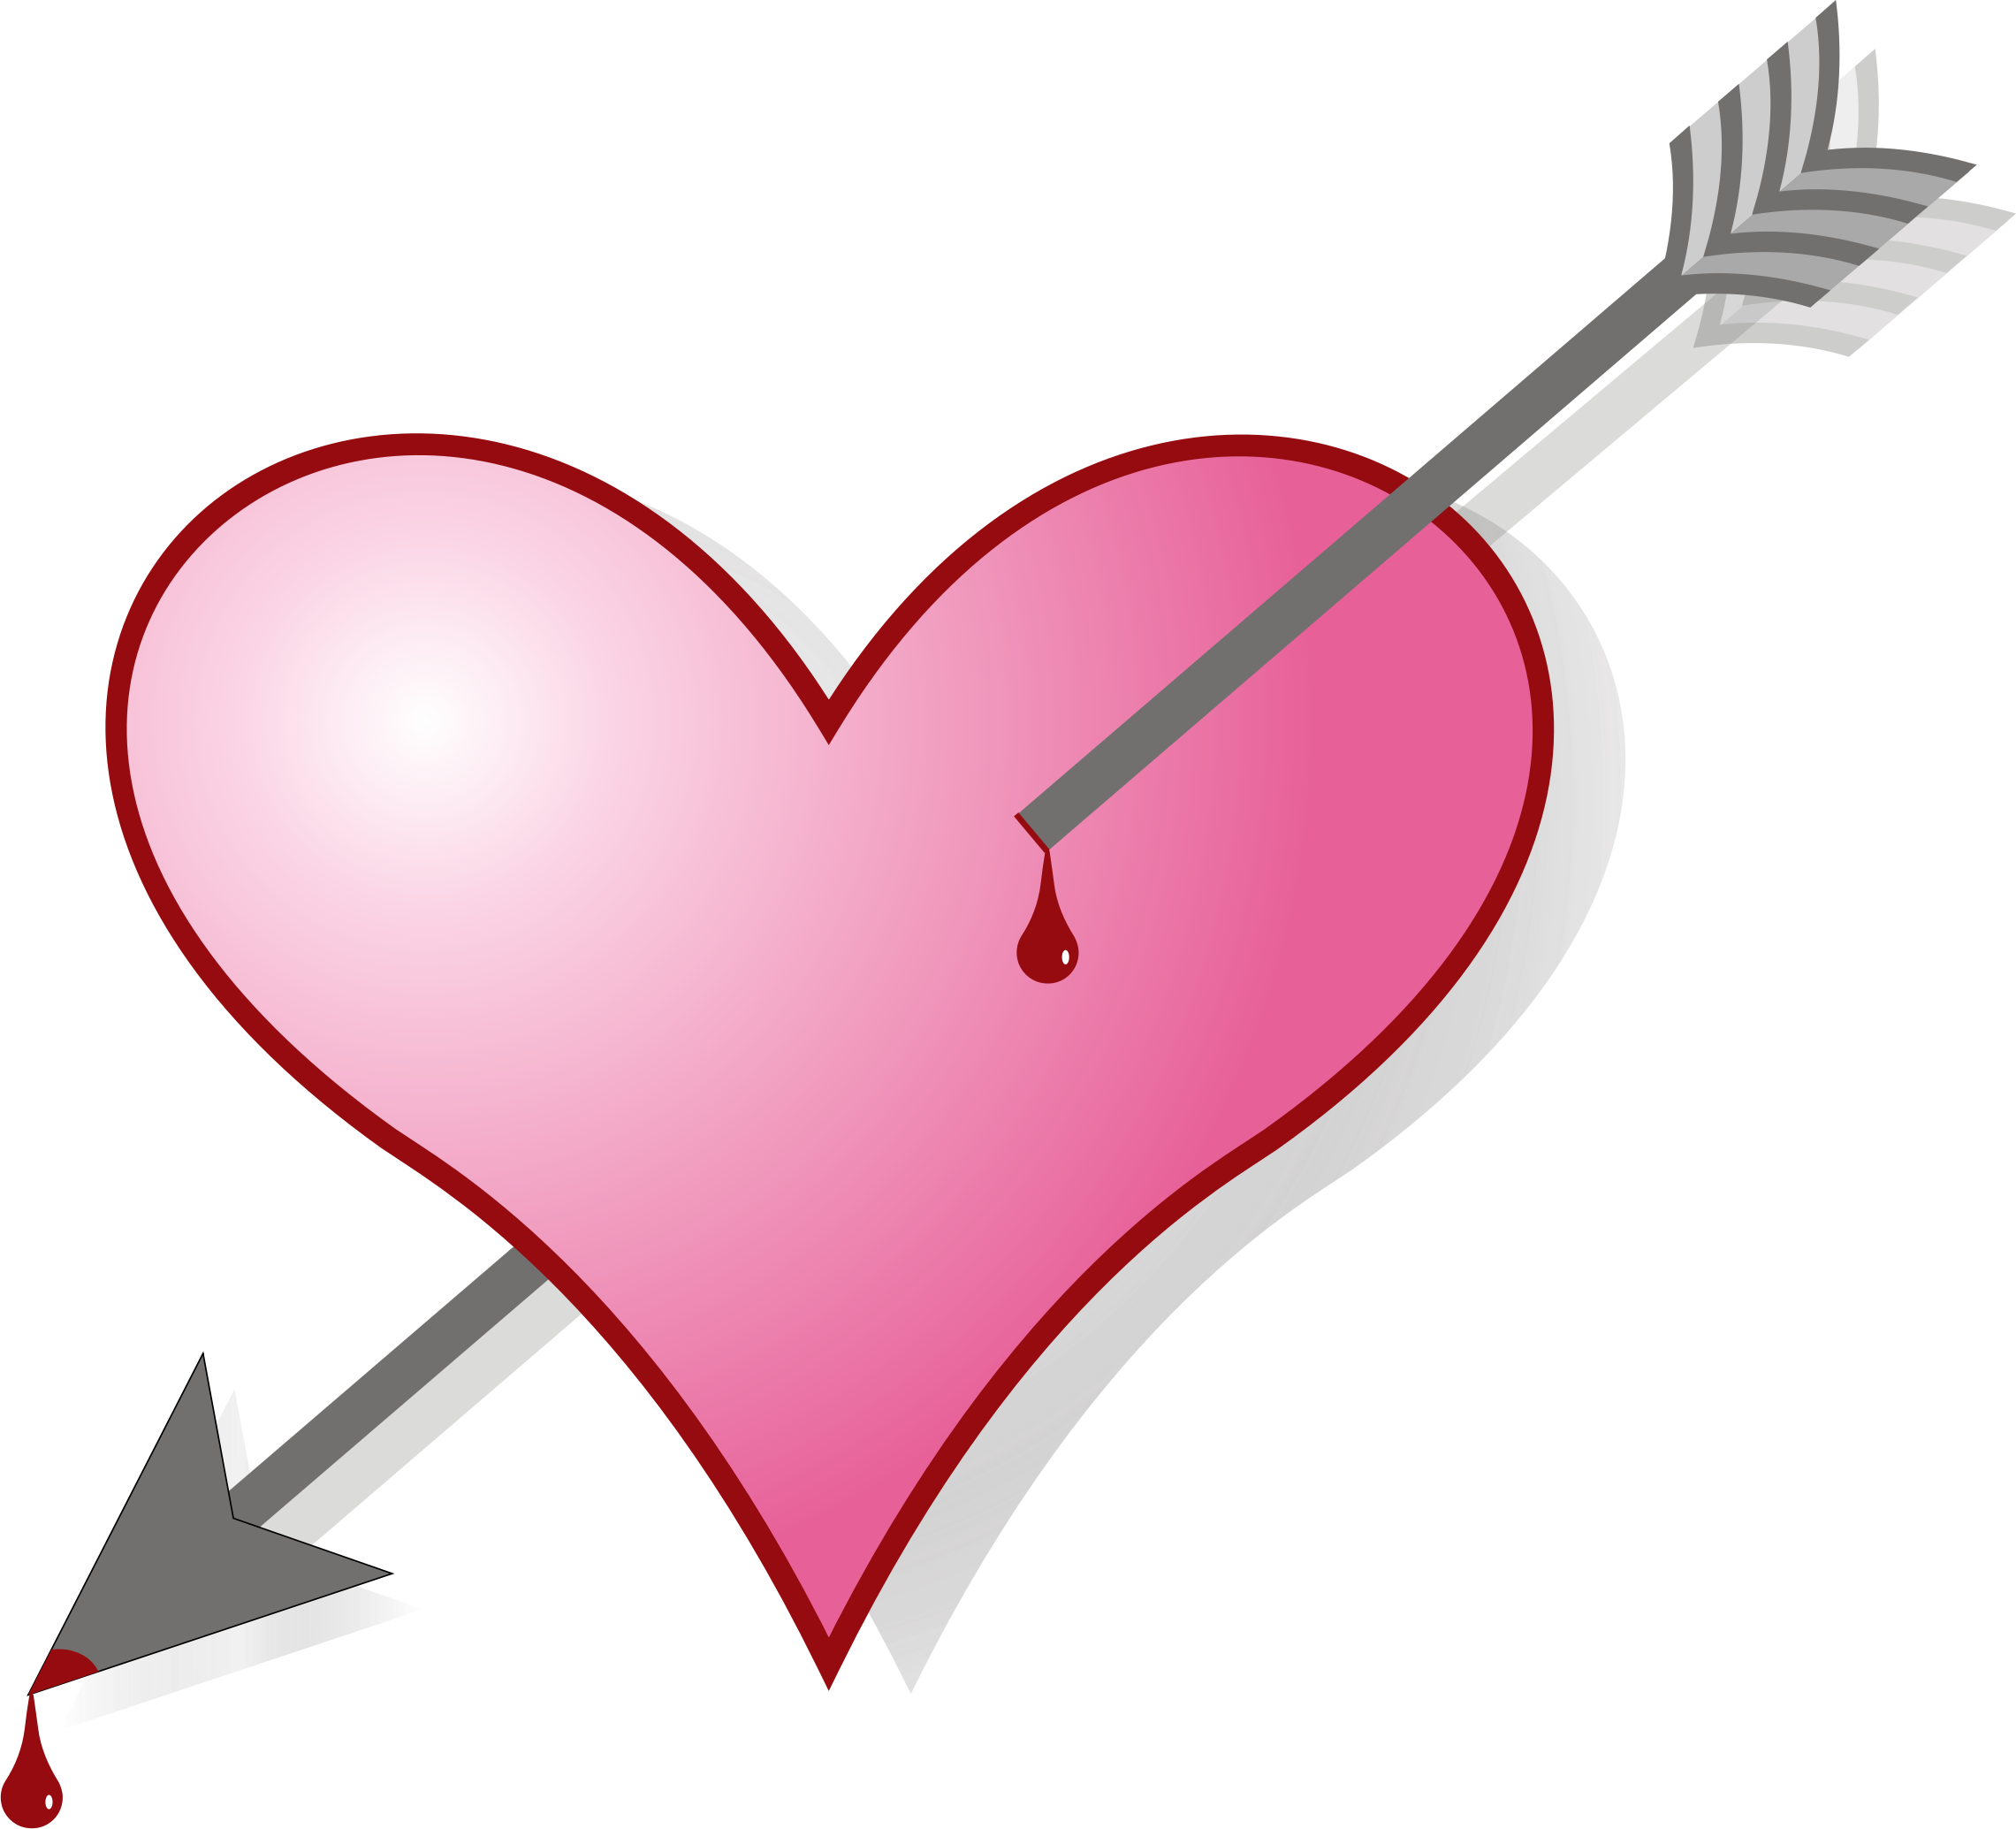 clipart heart with arrow - photo #3